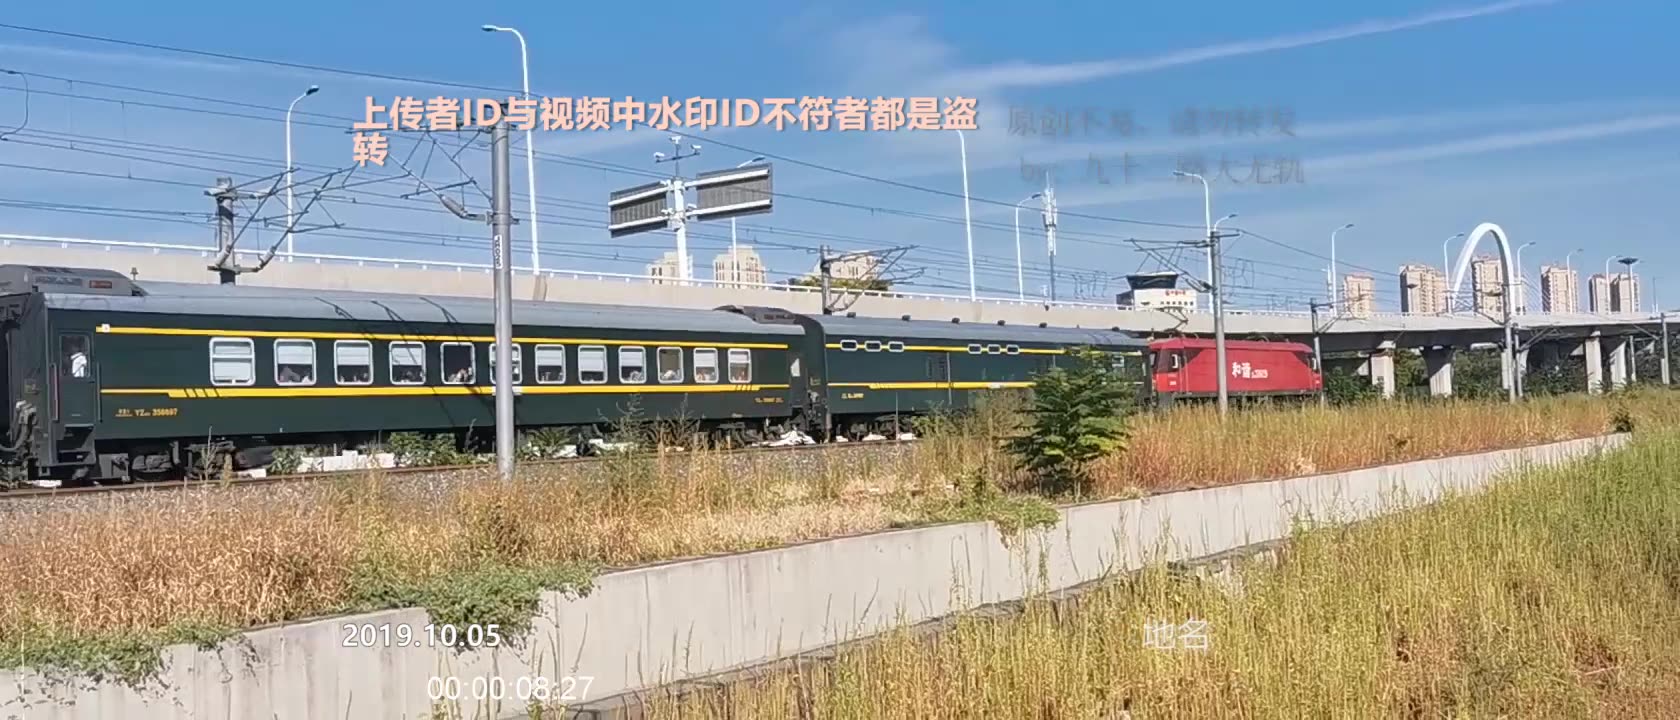 上海开来的1228次火车,从天津西站发车后,开往